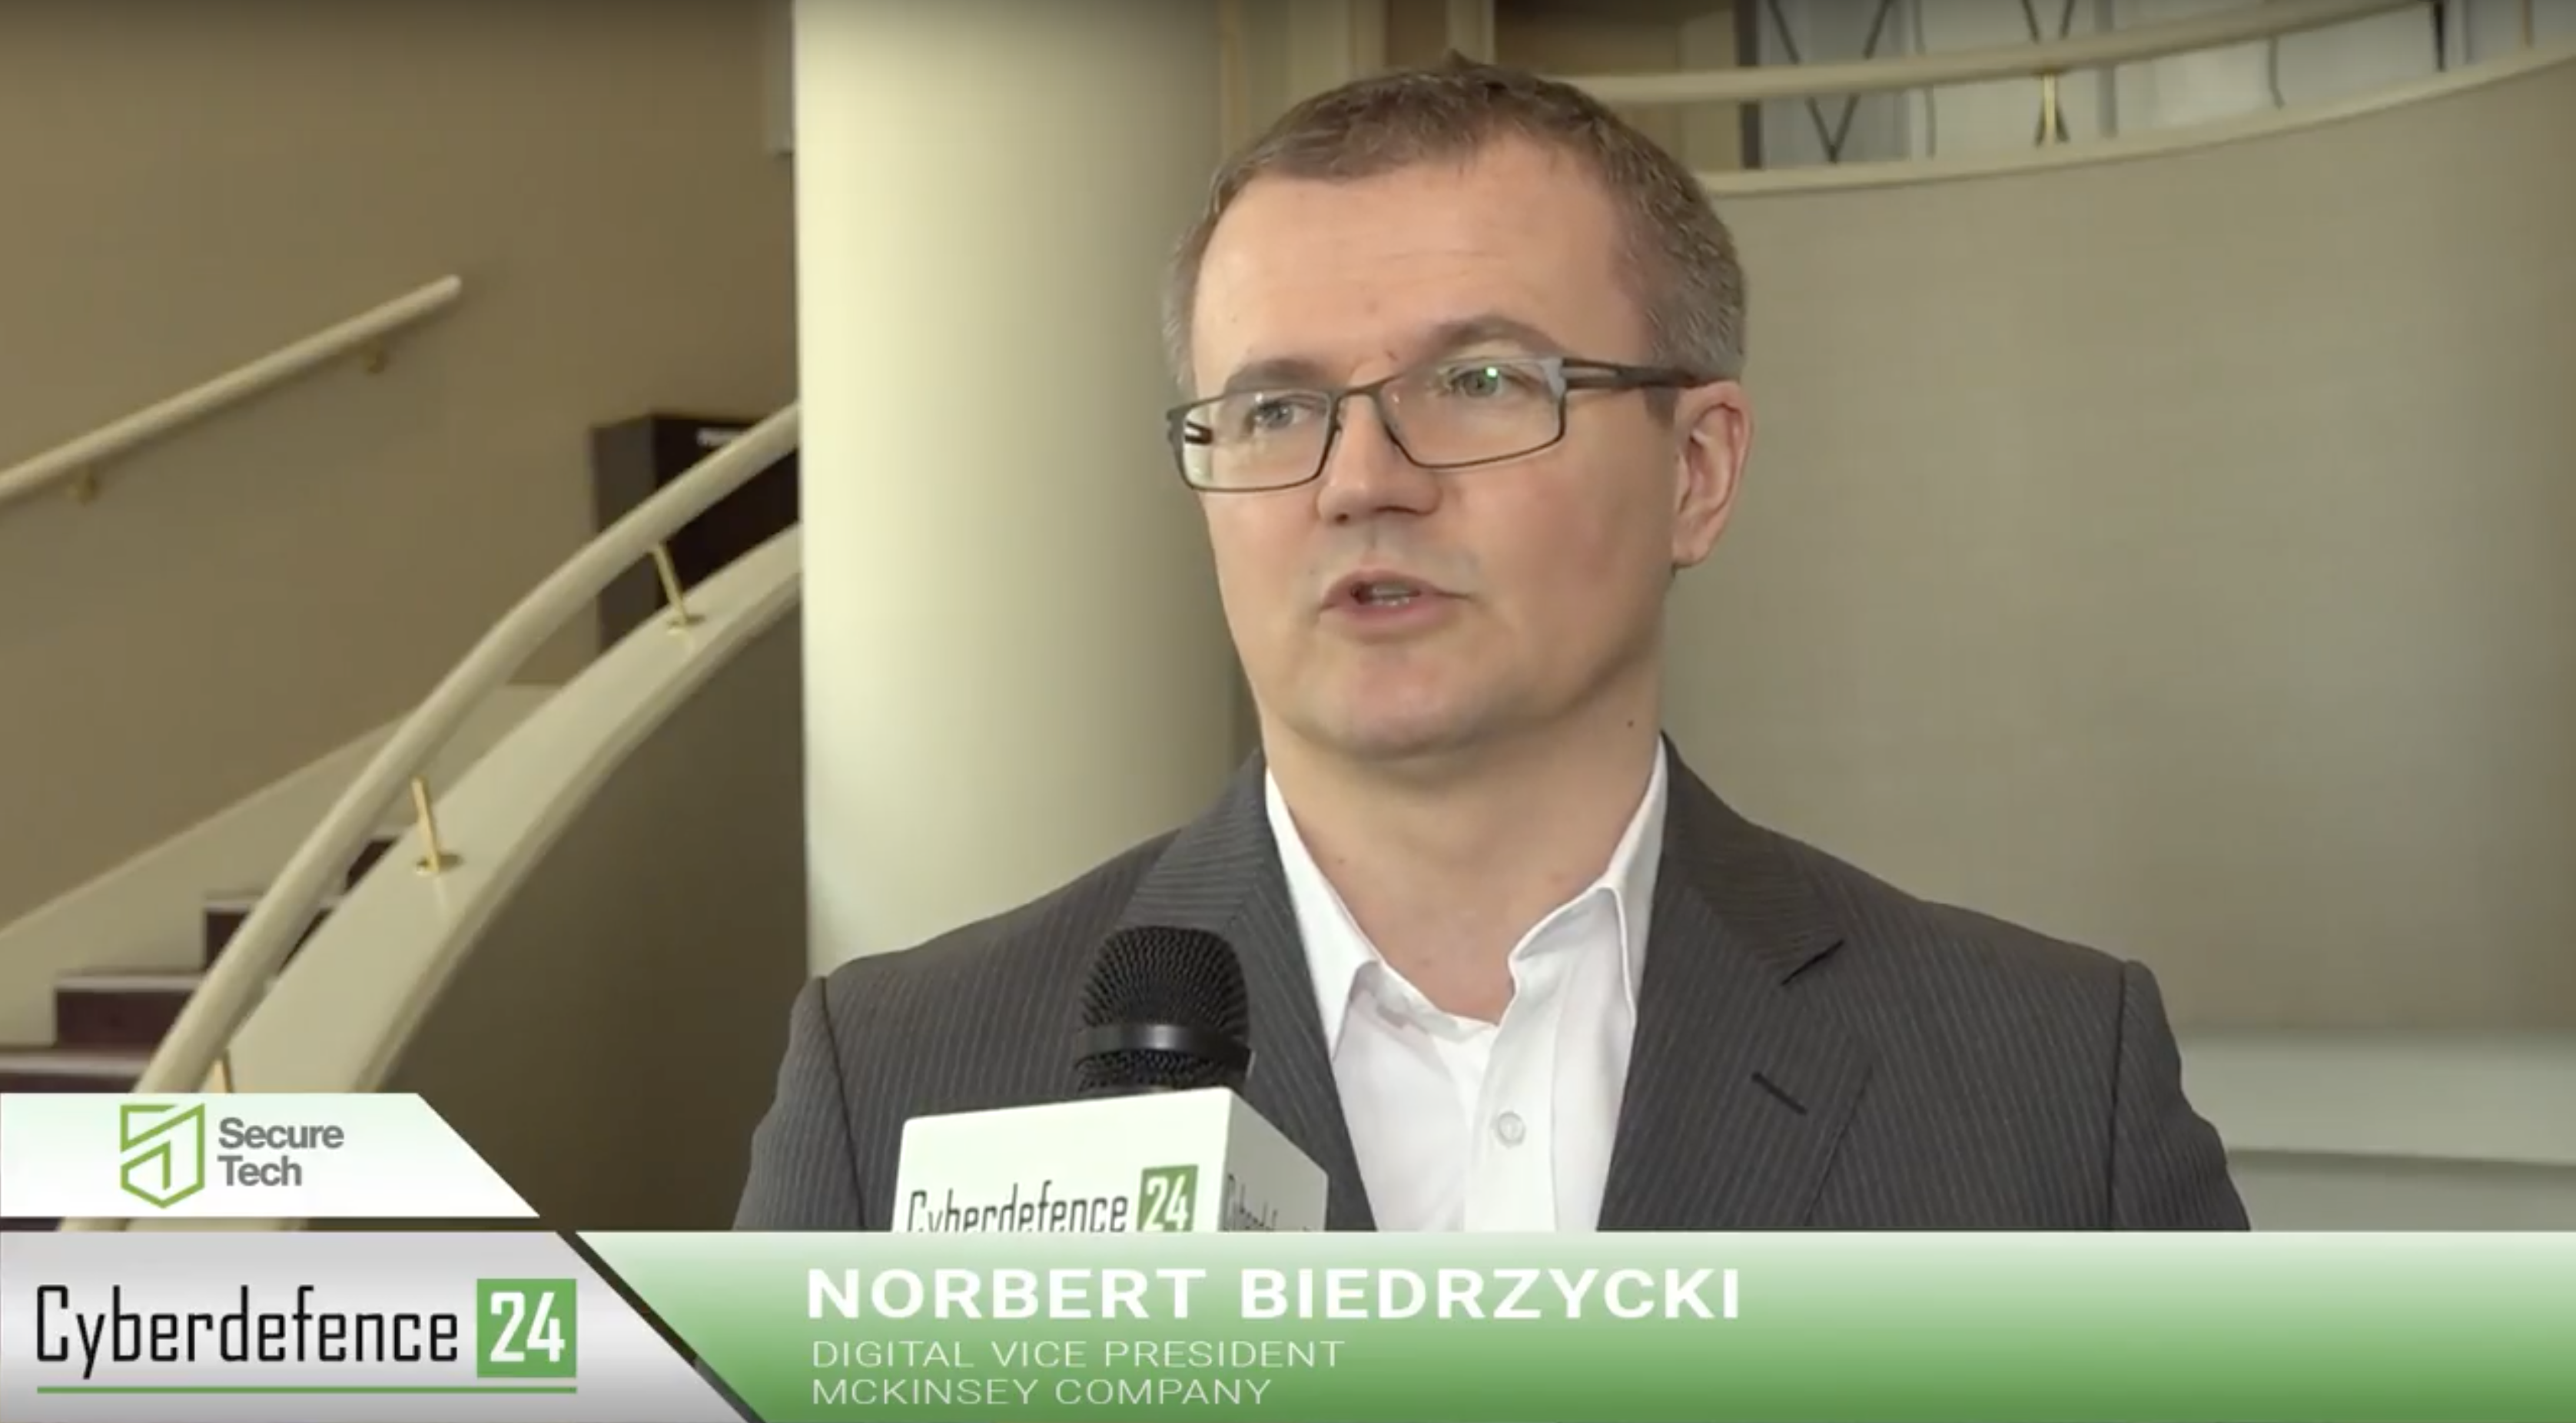 Wywiad - CyberDefence24 Norbert Biedrzycki